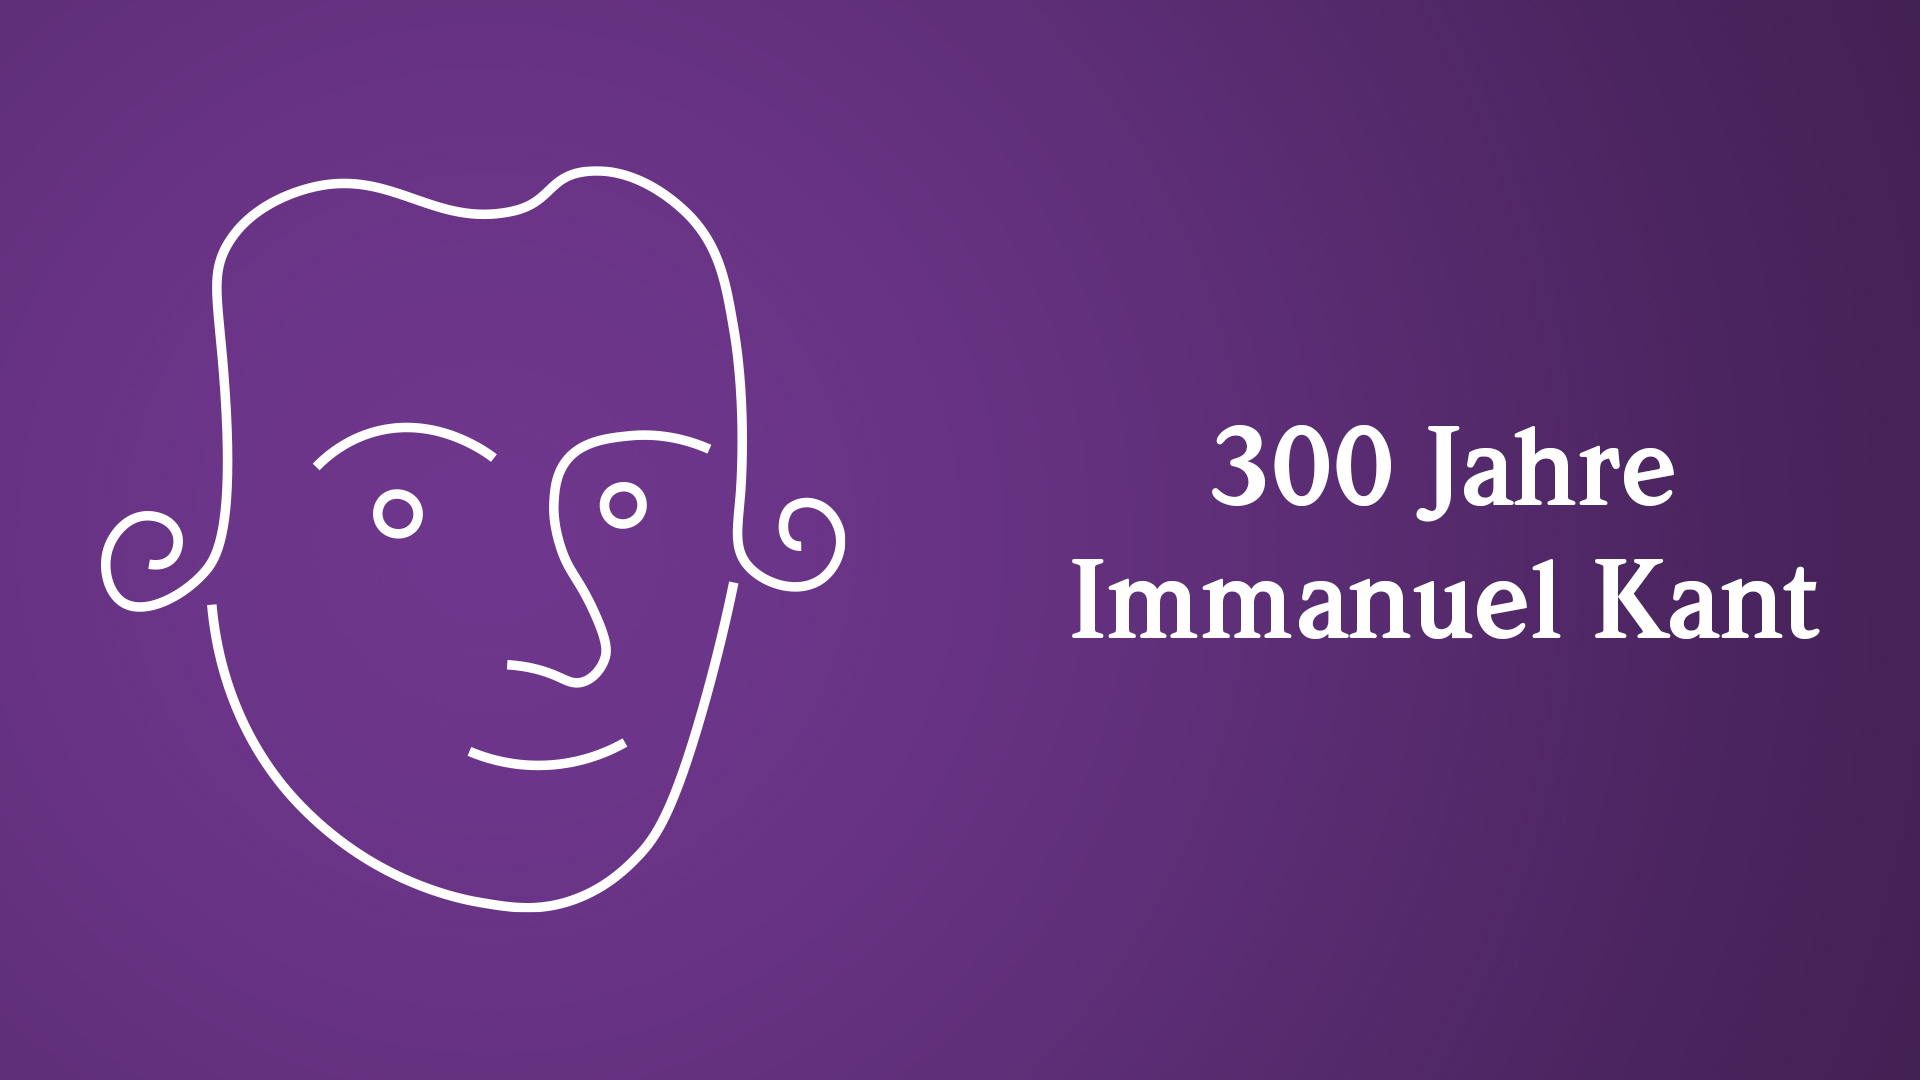 Weiße Strich-Zeichnung von Immanuel Kant auf violettem Hintergrund. Daneben weißer Text: "300 Jahre Immanuel Kant"